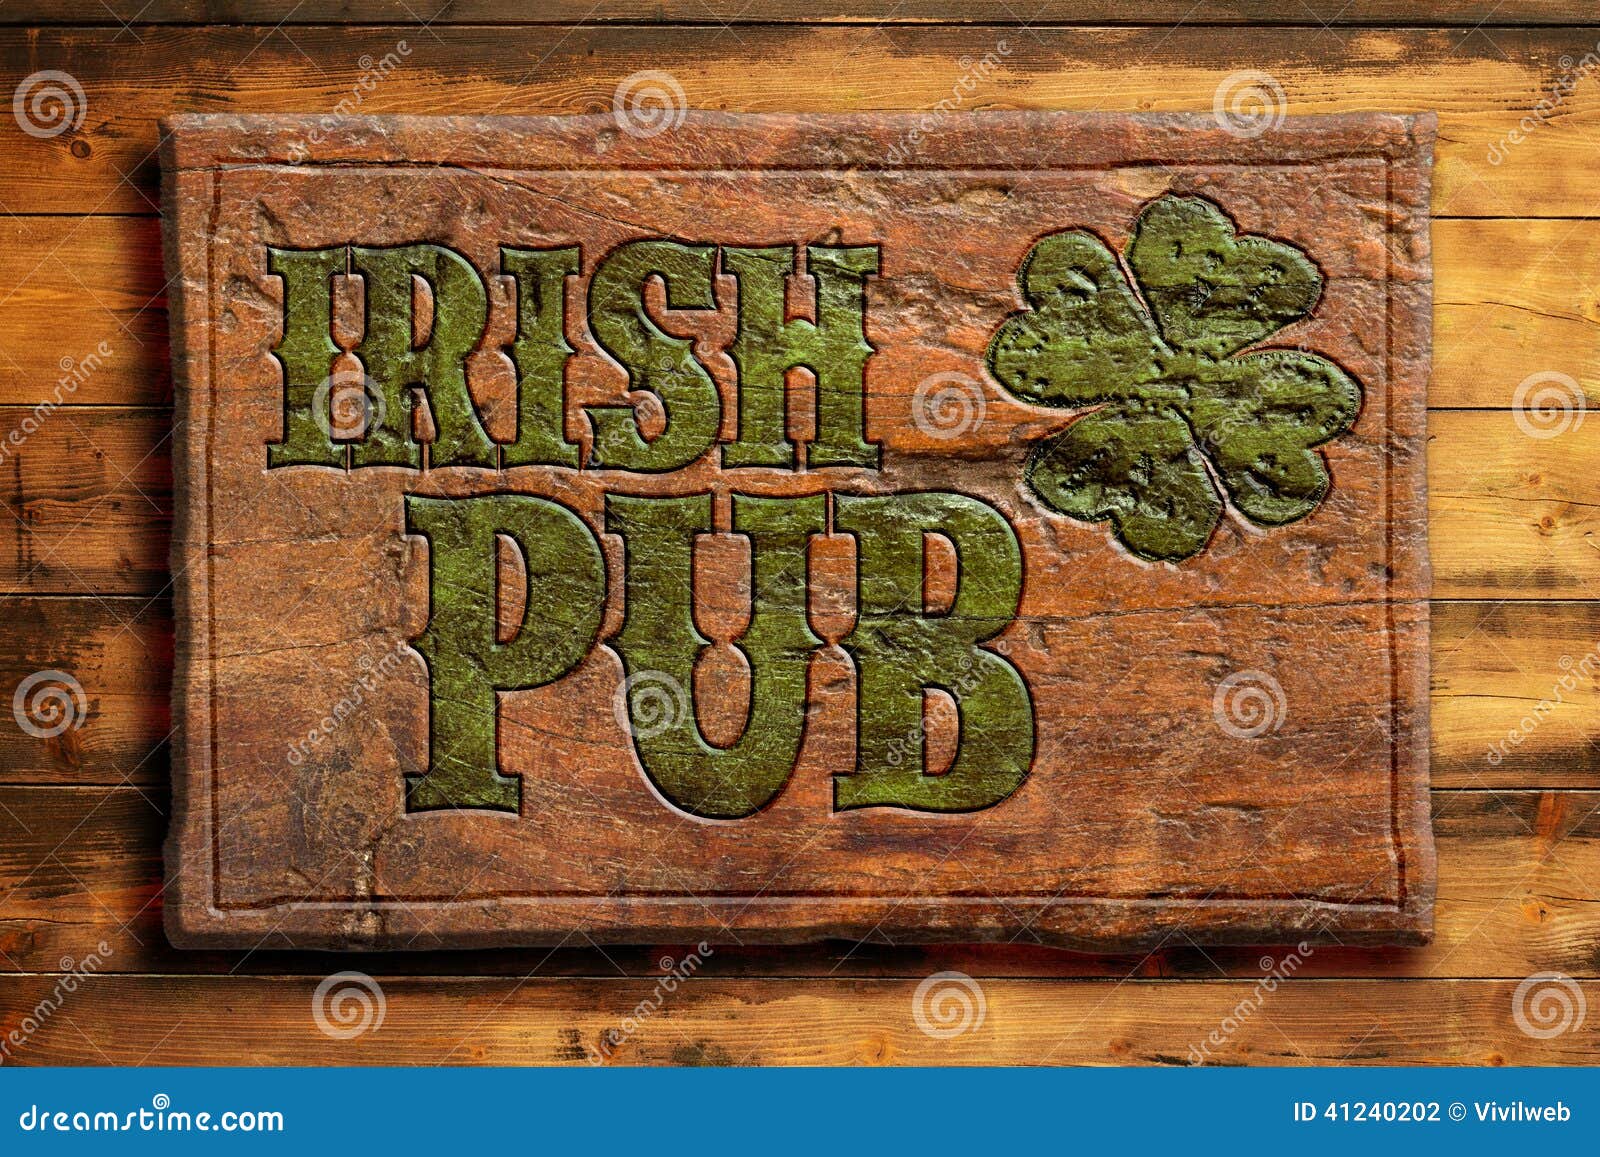 irish pub sign